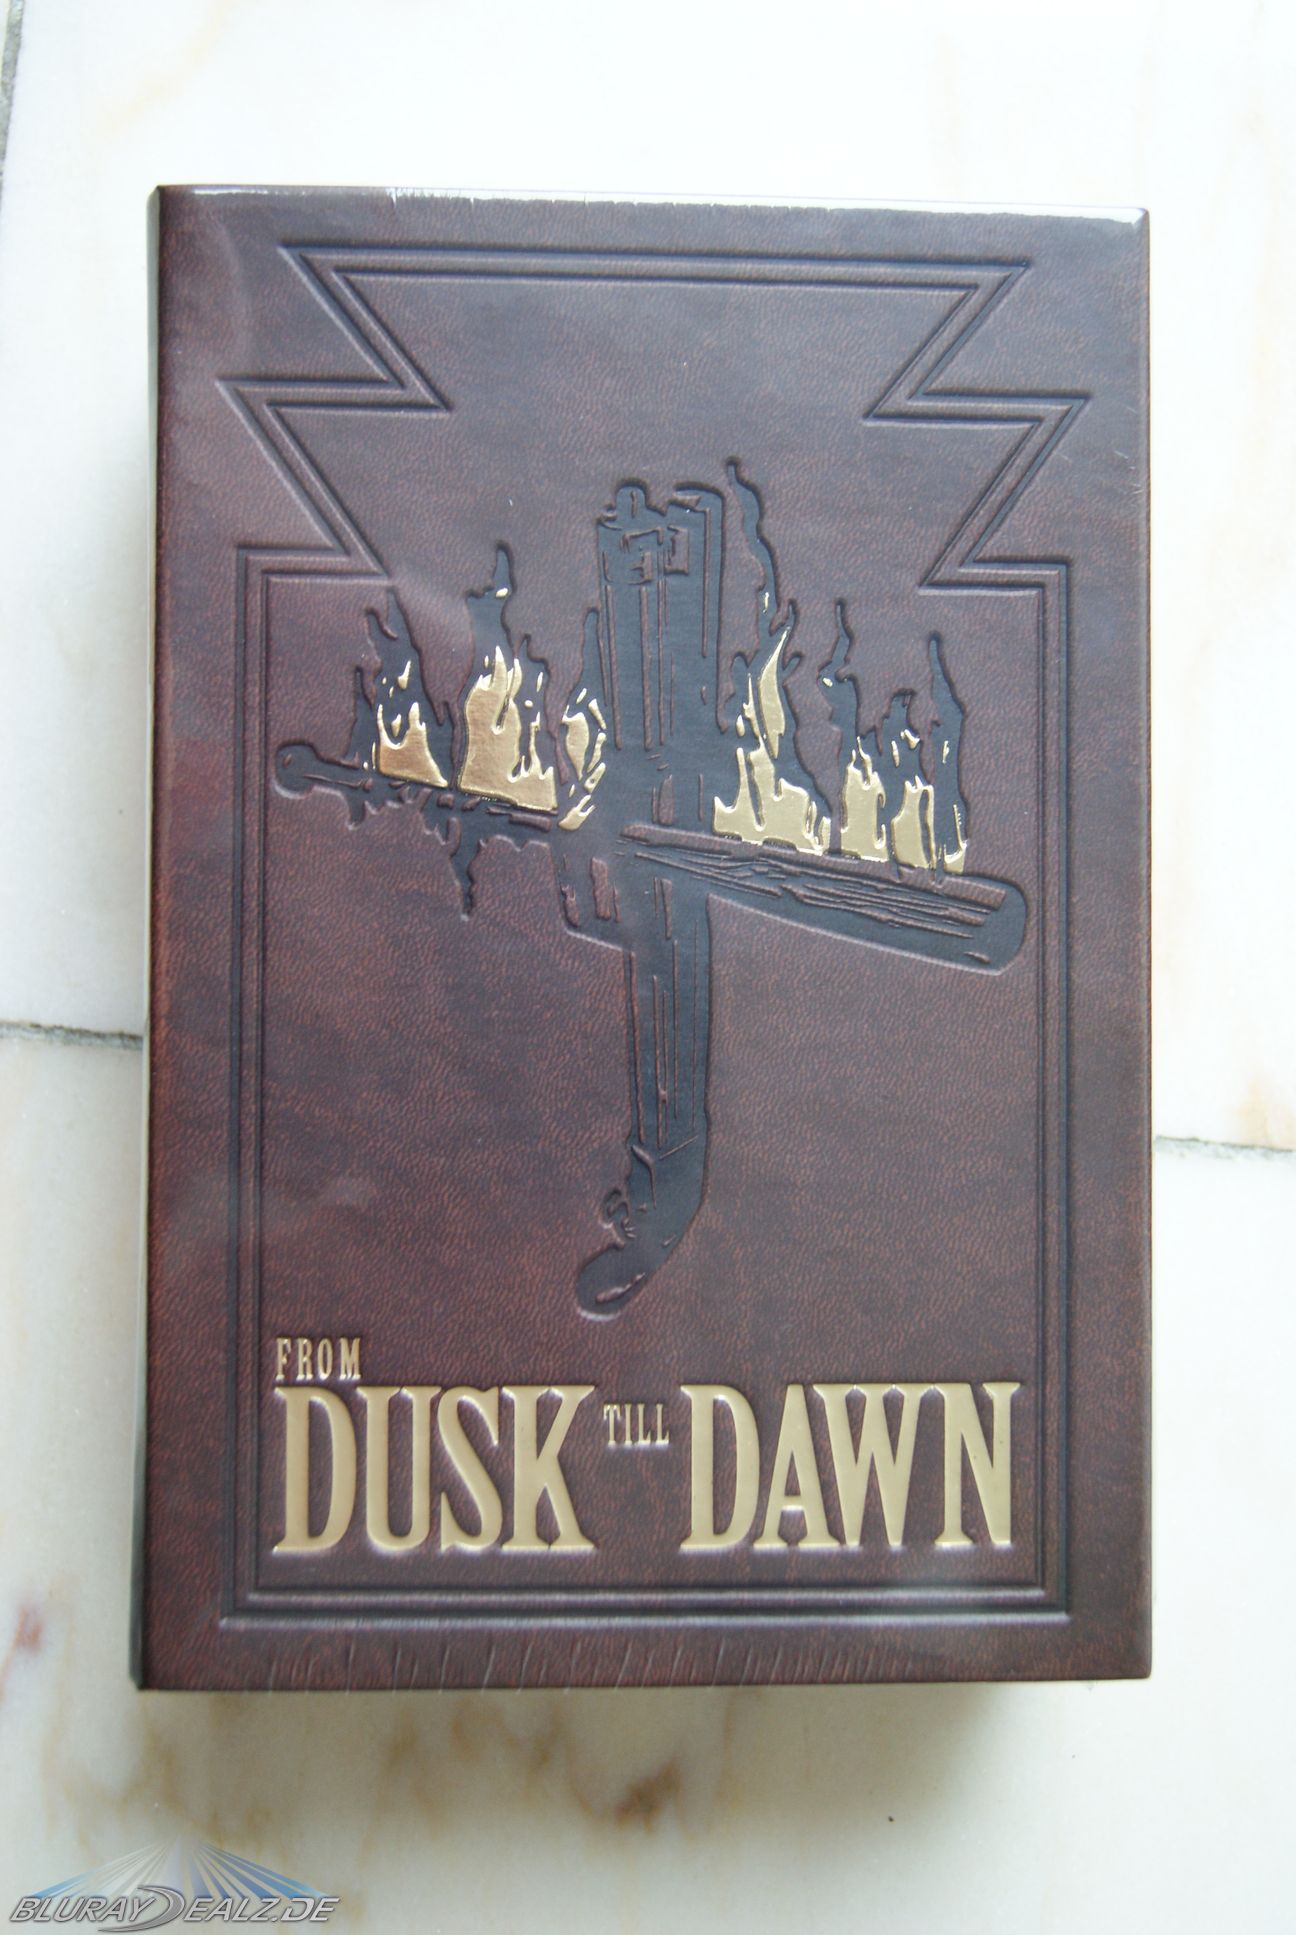 from dusk till dawn trilogy